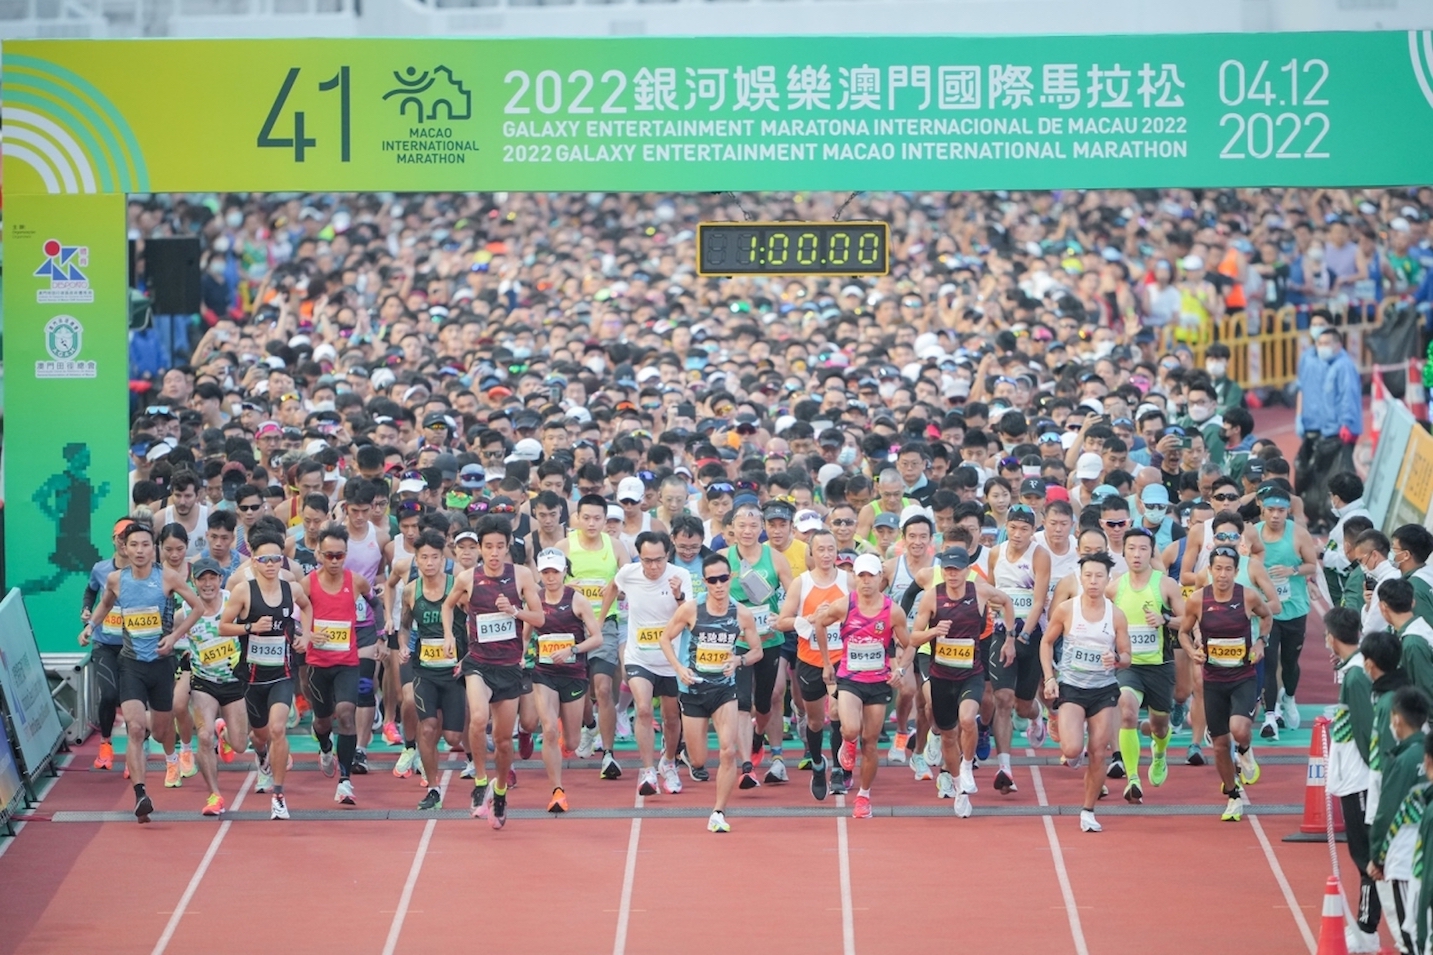 Maratona | Governo pondera alargar percurso a locais históricos